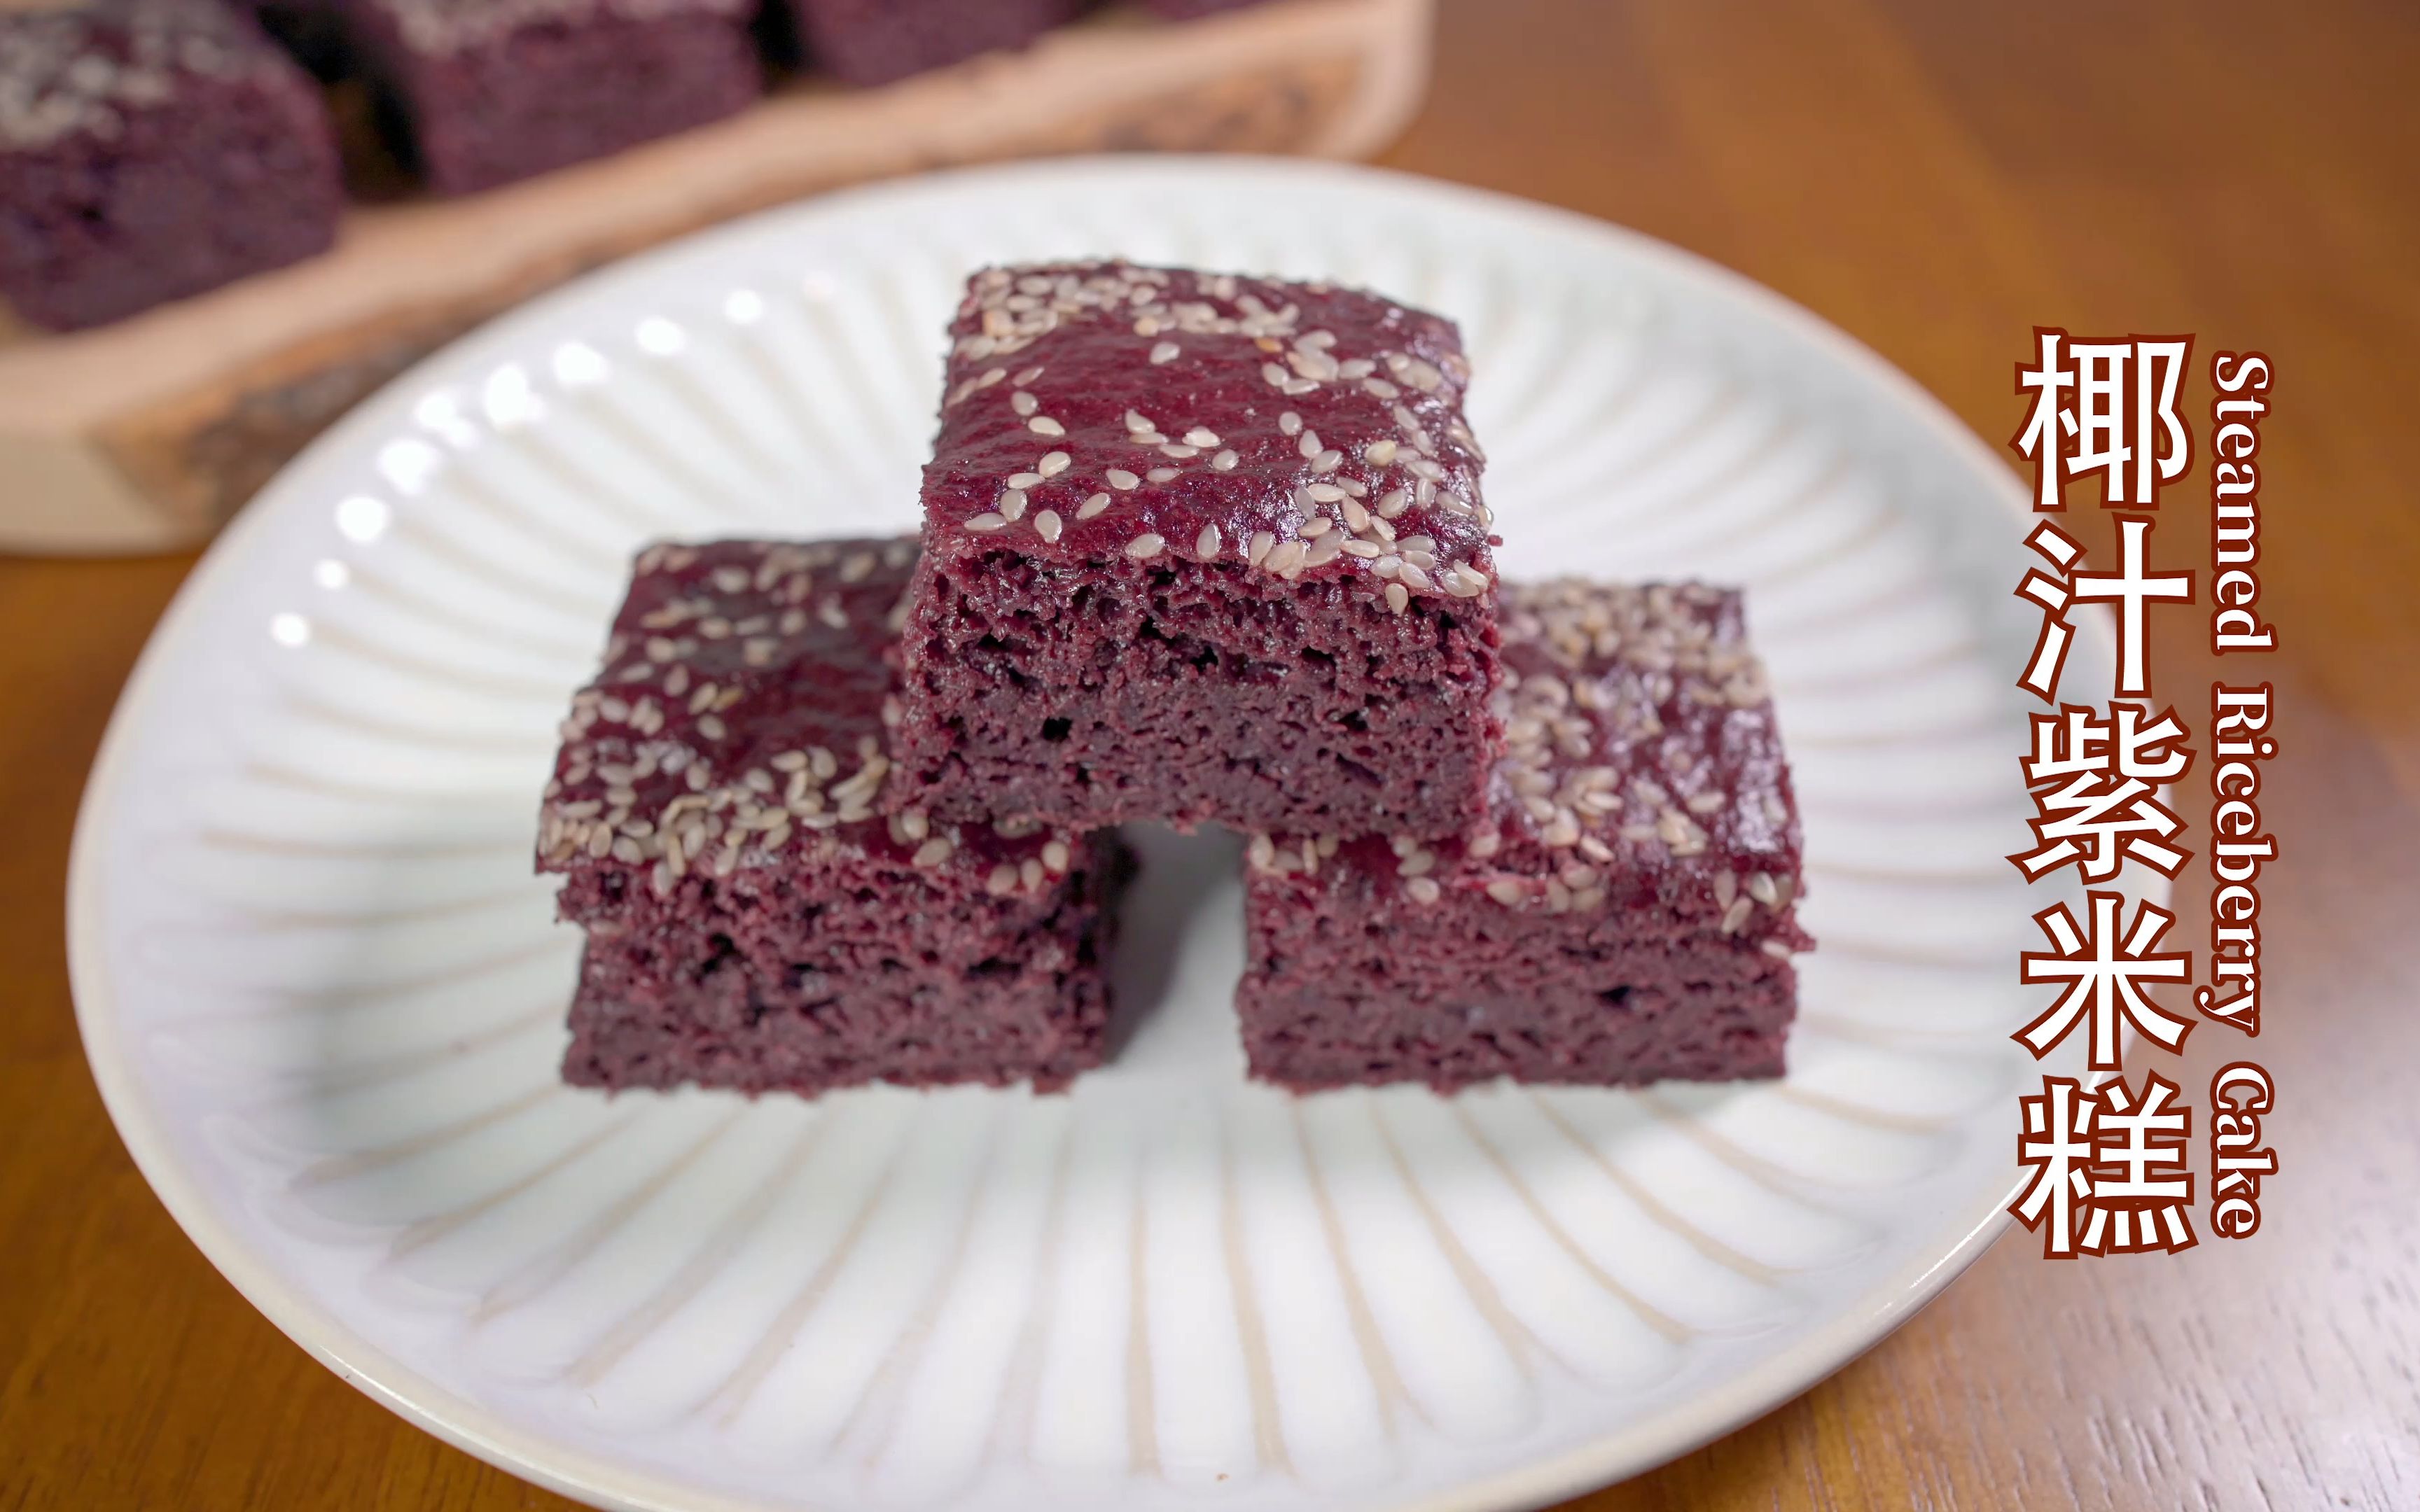 椰汁紫米糕 steamed riceberry cake